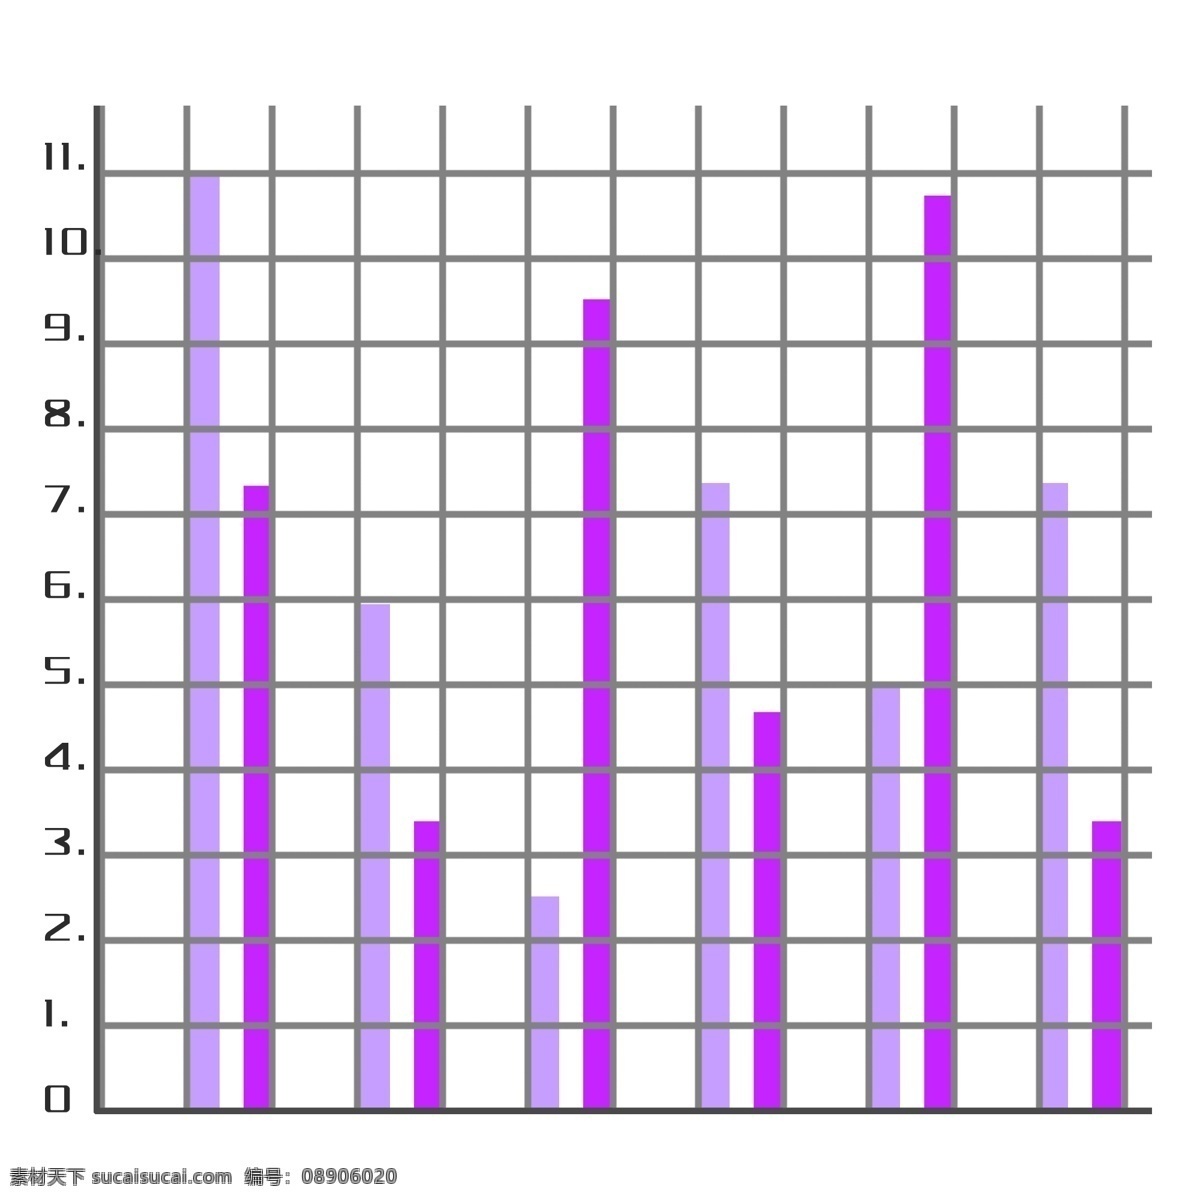 紫色 立体 图表 插图 立体图表 紫色图表 信息图表 彩色图表 数据图表 流程图 分类便签 数字图表